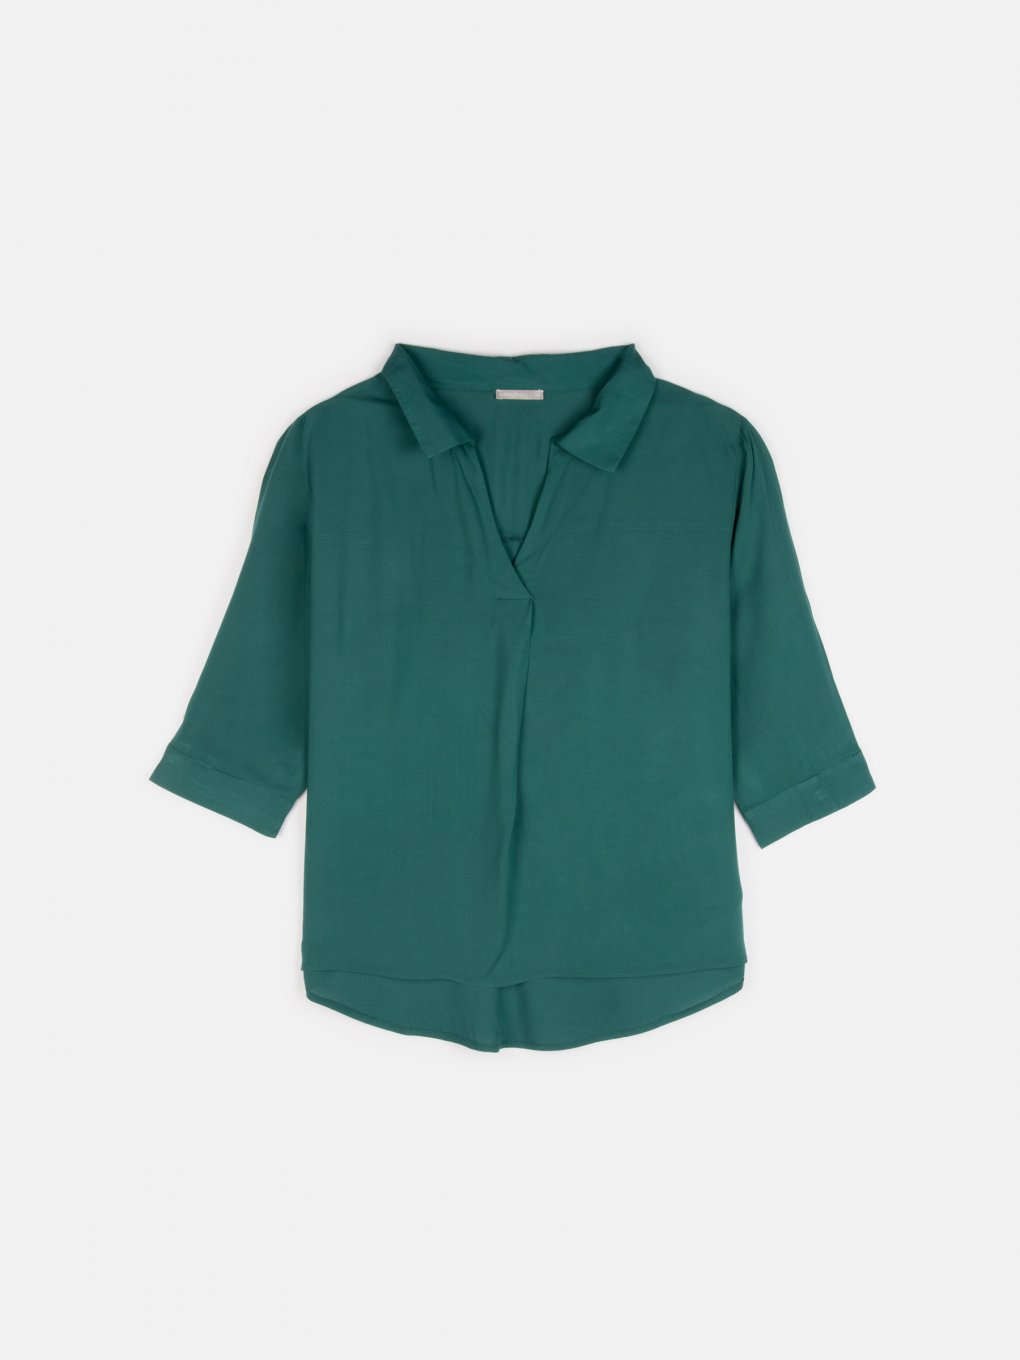 Plus size basic v-neck viscose blouse with 3/4 sleeves